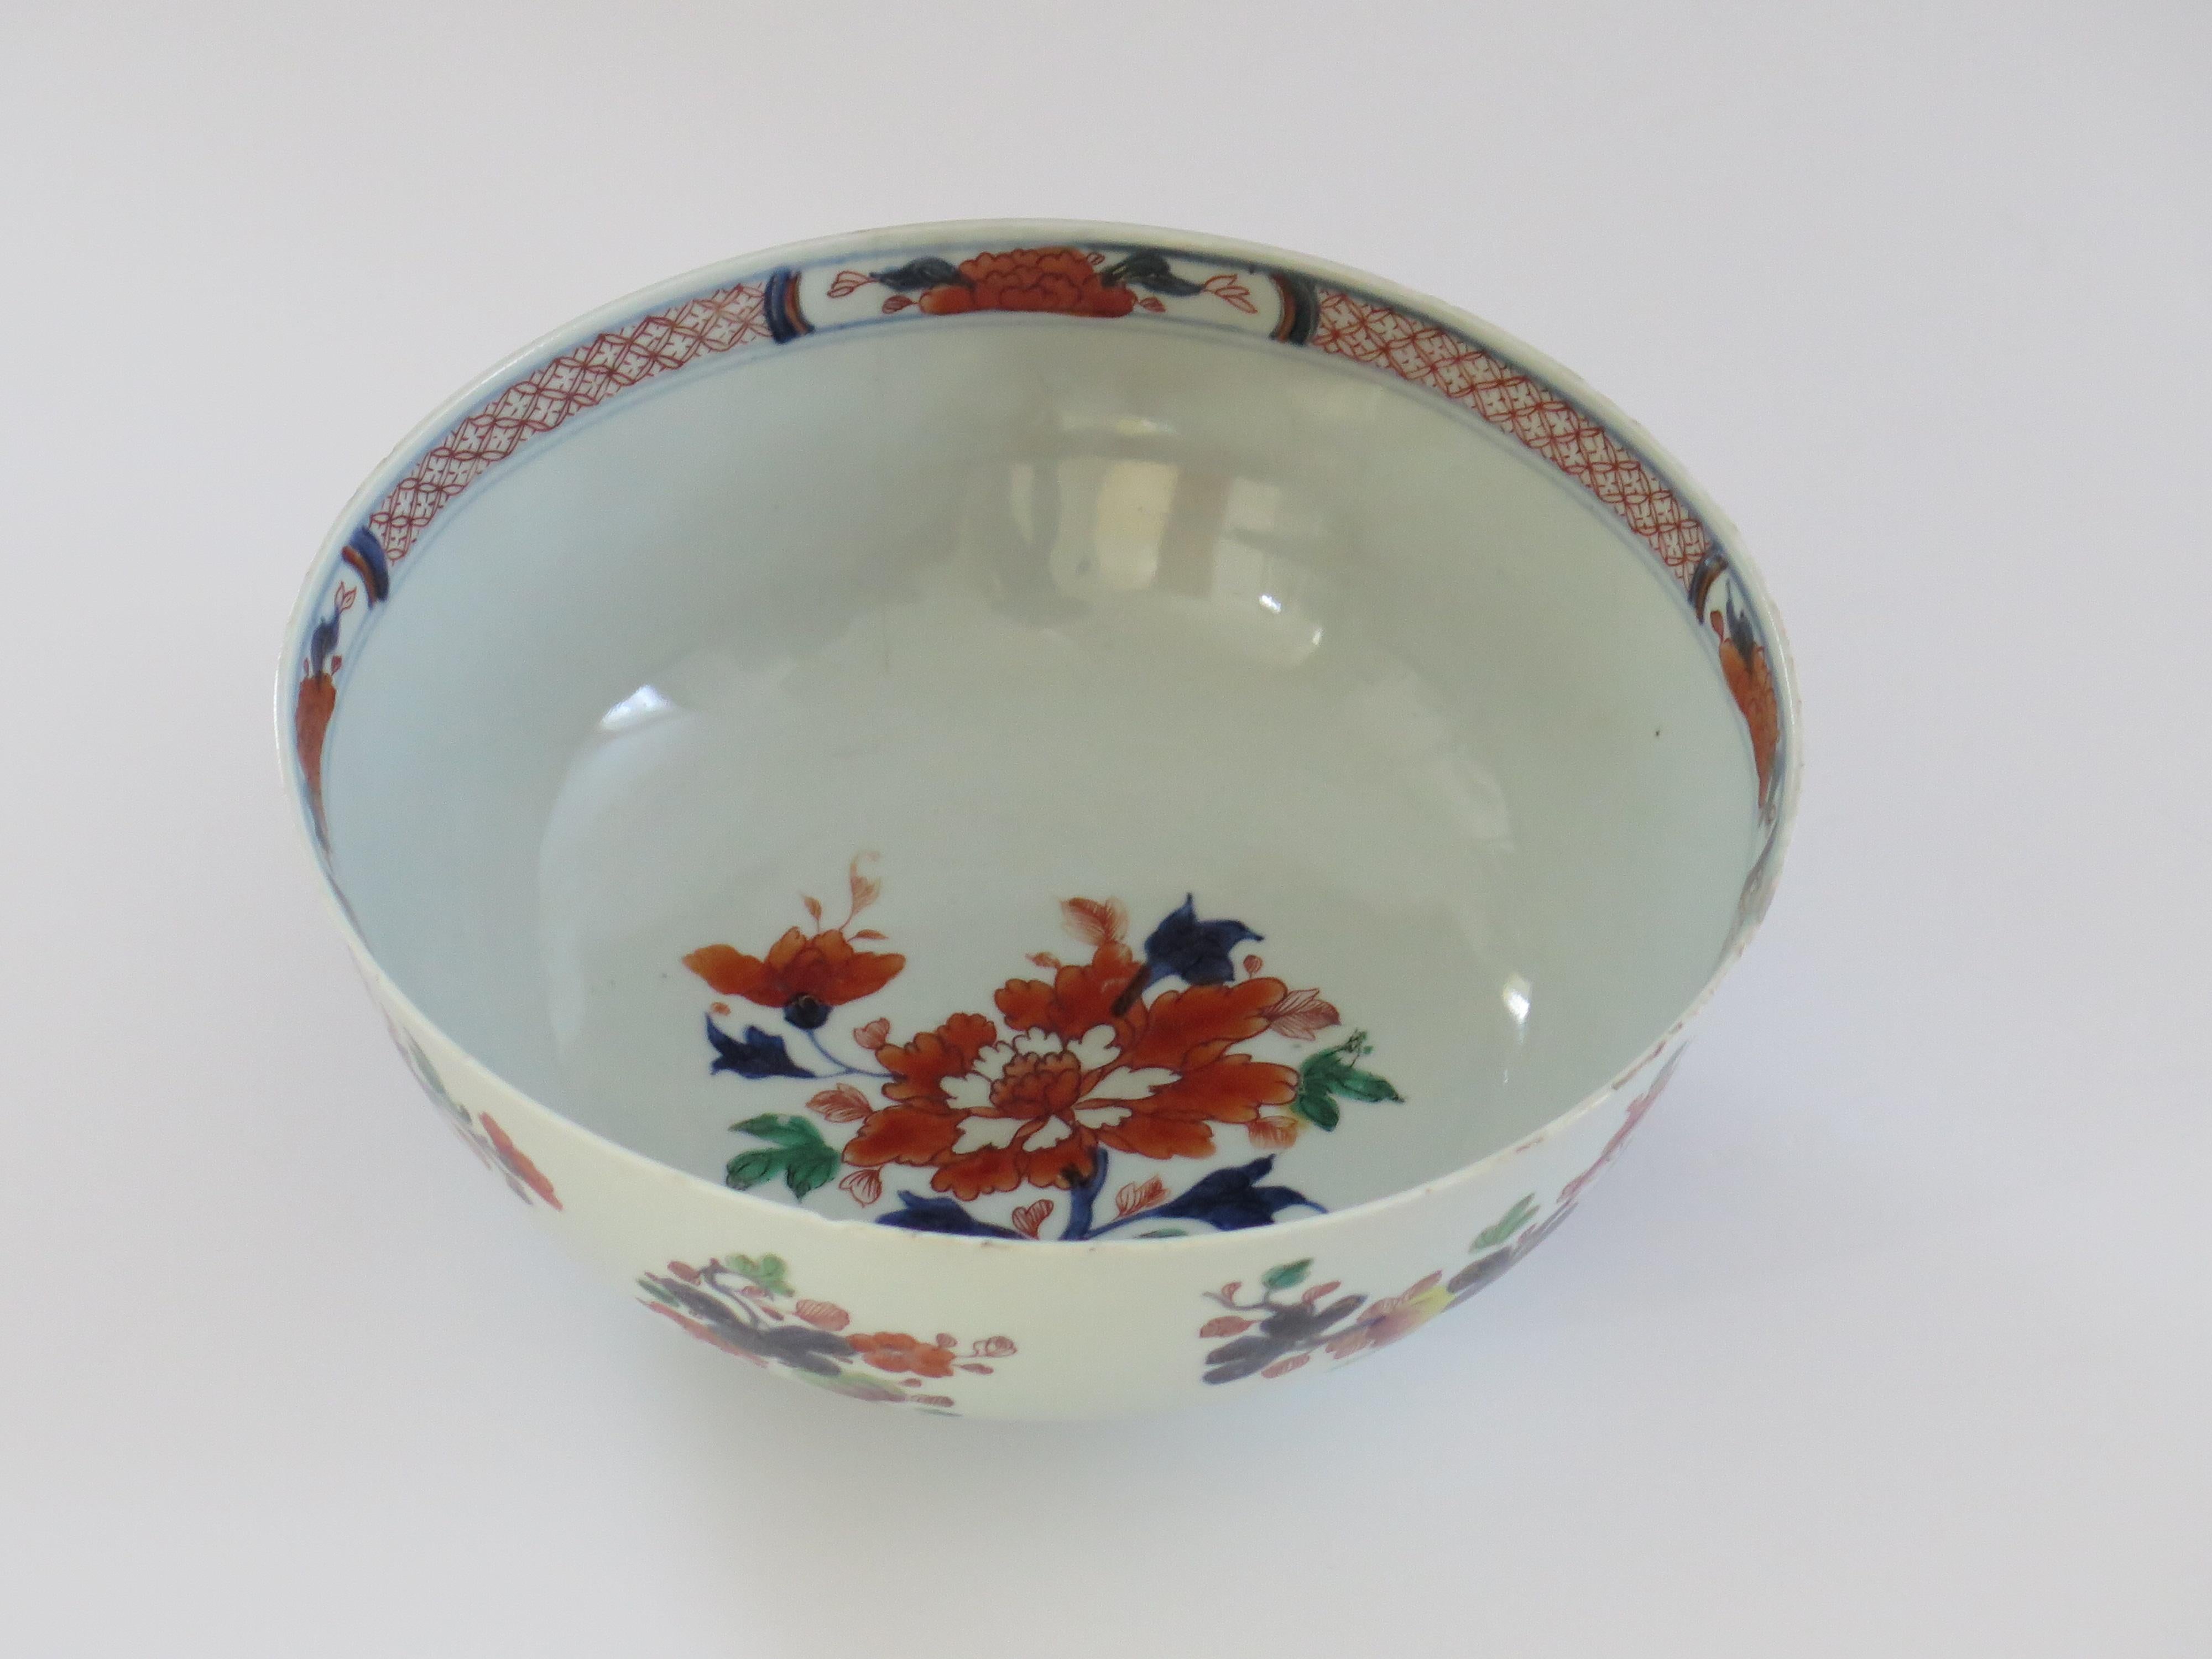 Il s'agit d'un grand bol d'exportation chinois magnifiquement peint à la main, datant du milieu du XVIIIe siècle, dynastie Qing, période Qianlong, 1736-1795. Nous datons cette pièce d'environ 1750.

Le bol est bien empoté sur un pied de hauteur